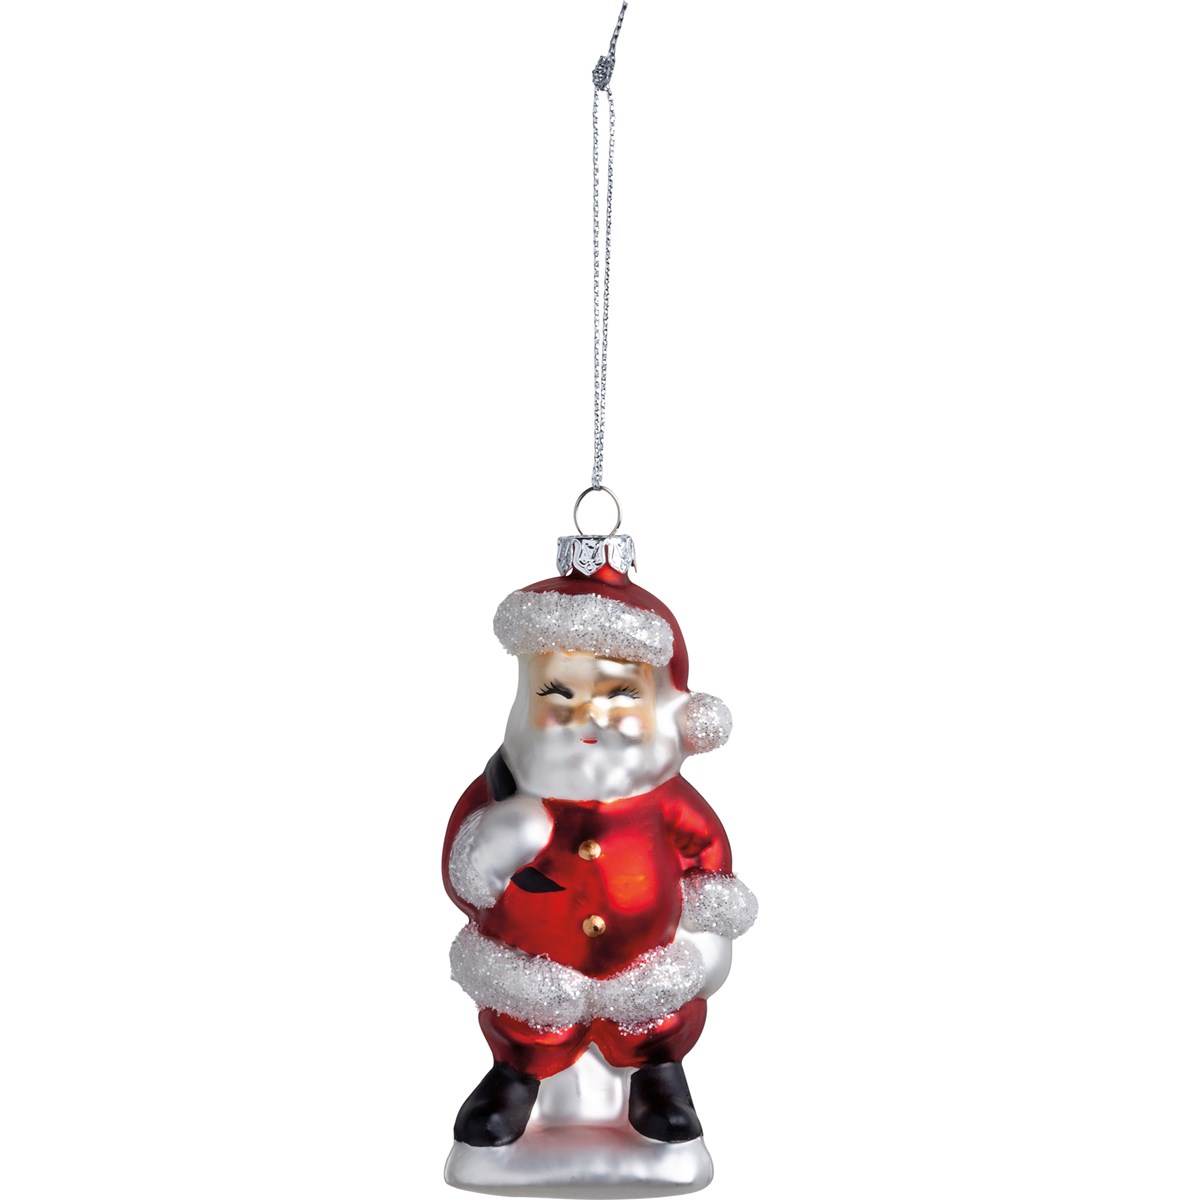 Santa Glass Ornament - Glass, Metal, Glitter